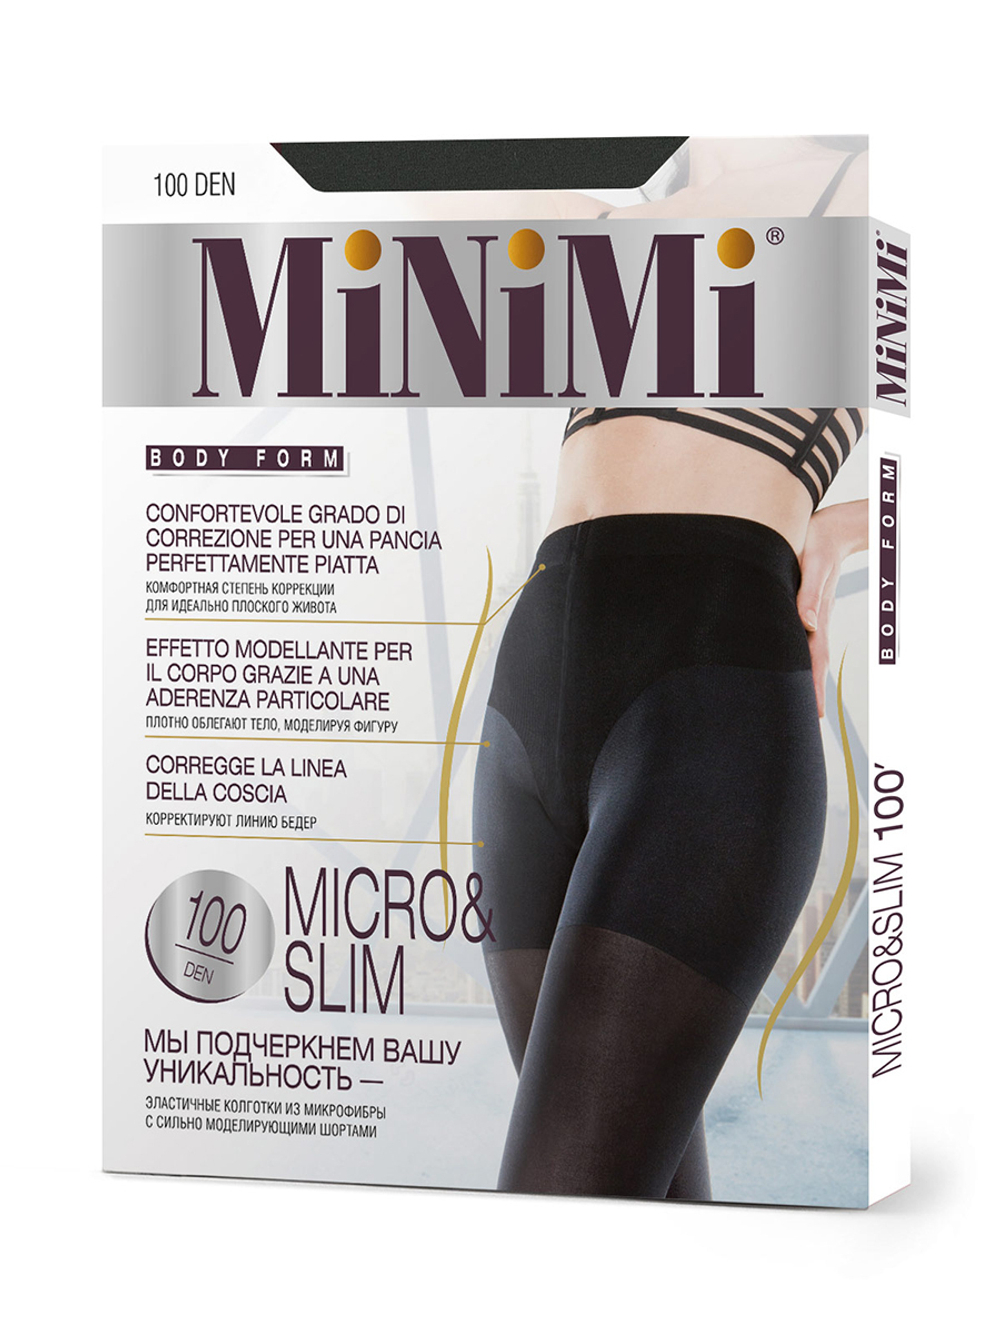 MiNiMi BodyForm Micro&Slim 100